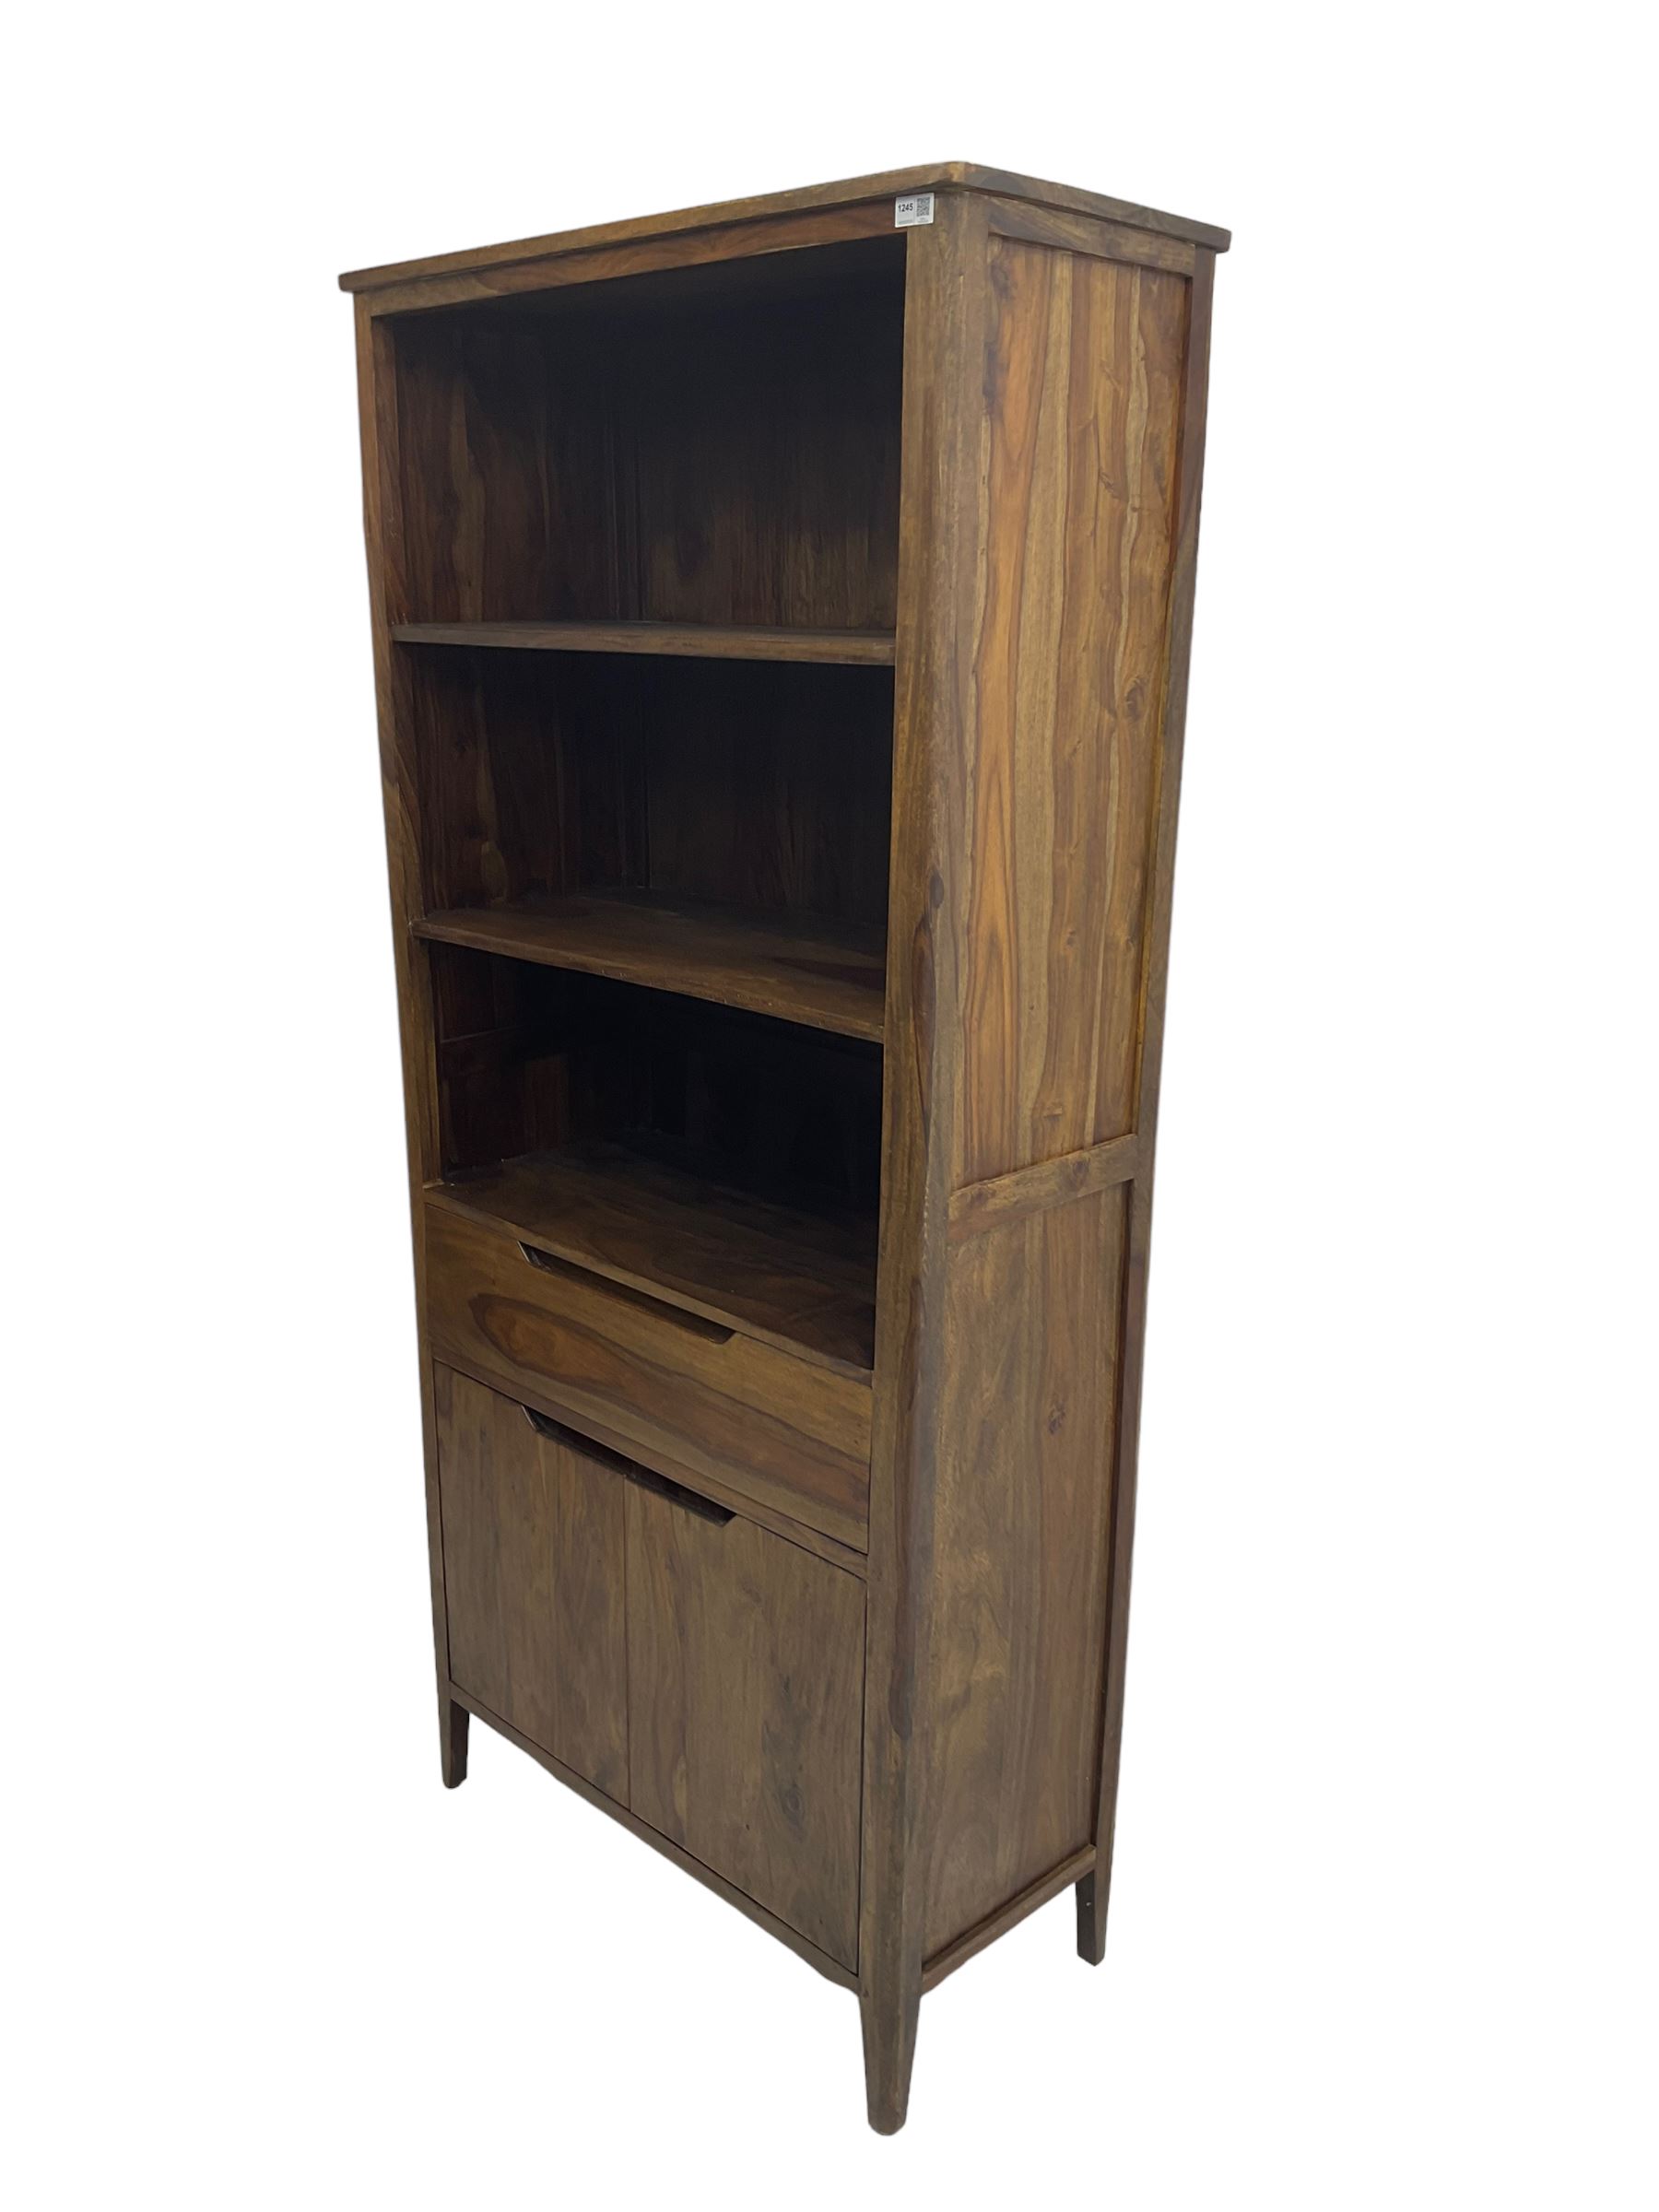 Hardwood bookcase - Image 5 of 6